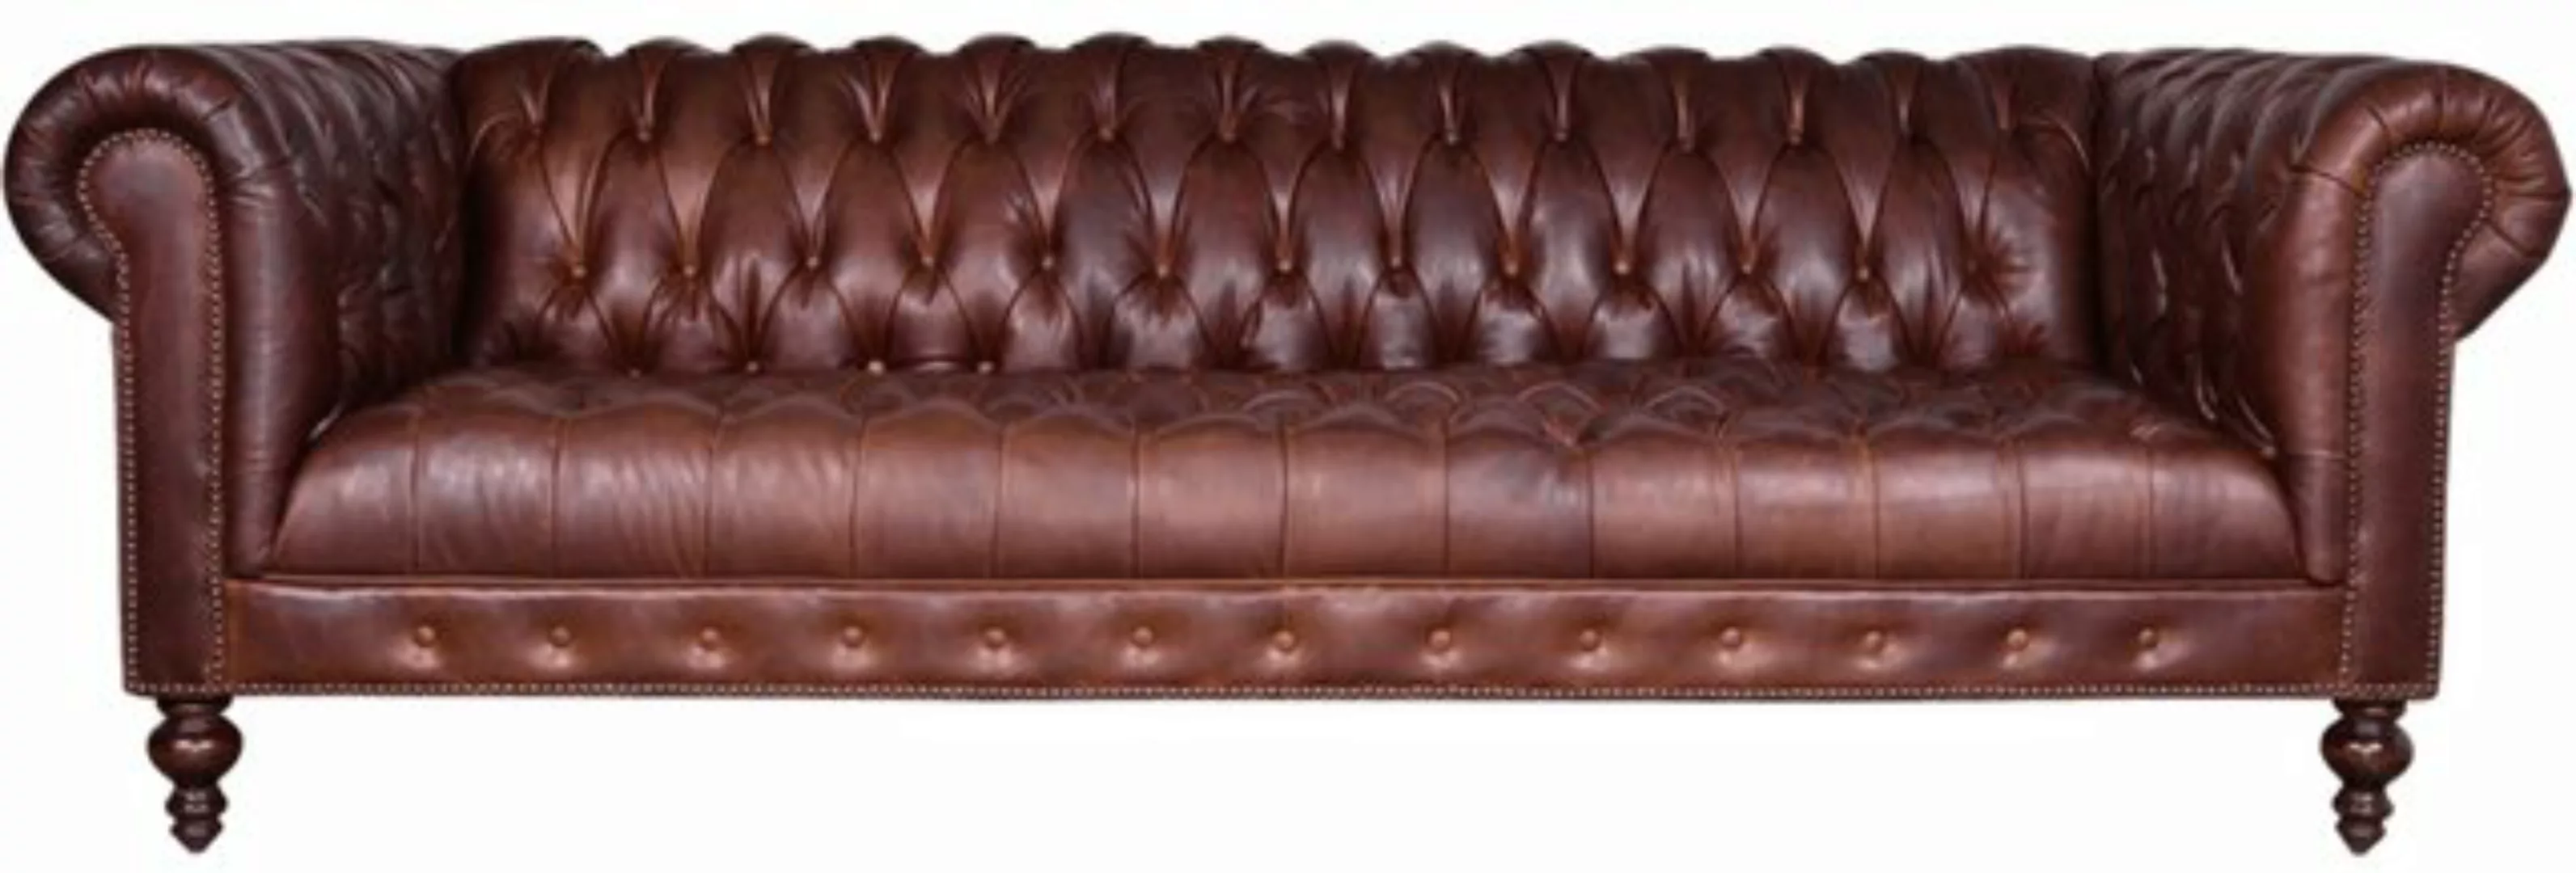 JVmoebel Sofa Luxus Moderner 4-Sitzer Chesterfield Möbel Klassisch Neu, Mad günstig online kaufen